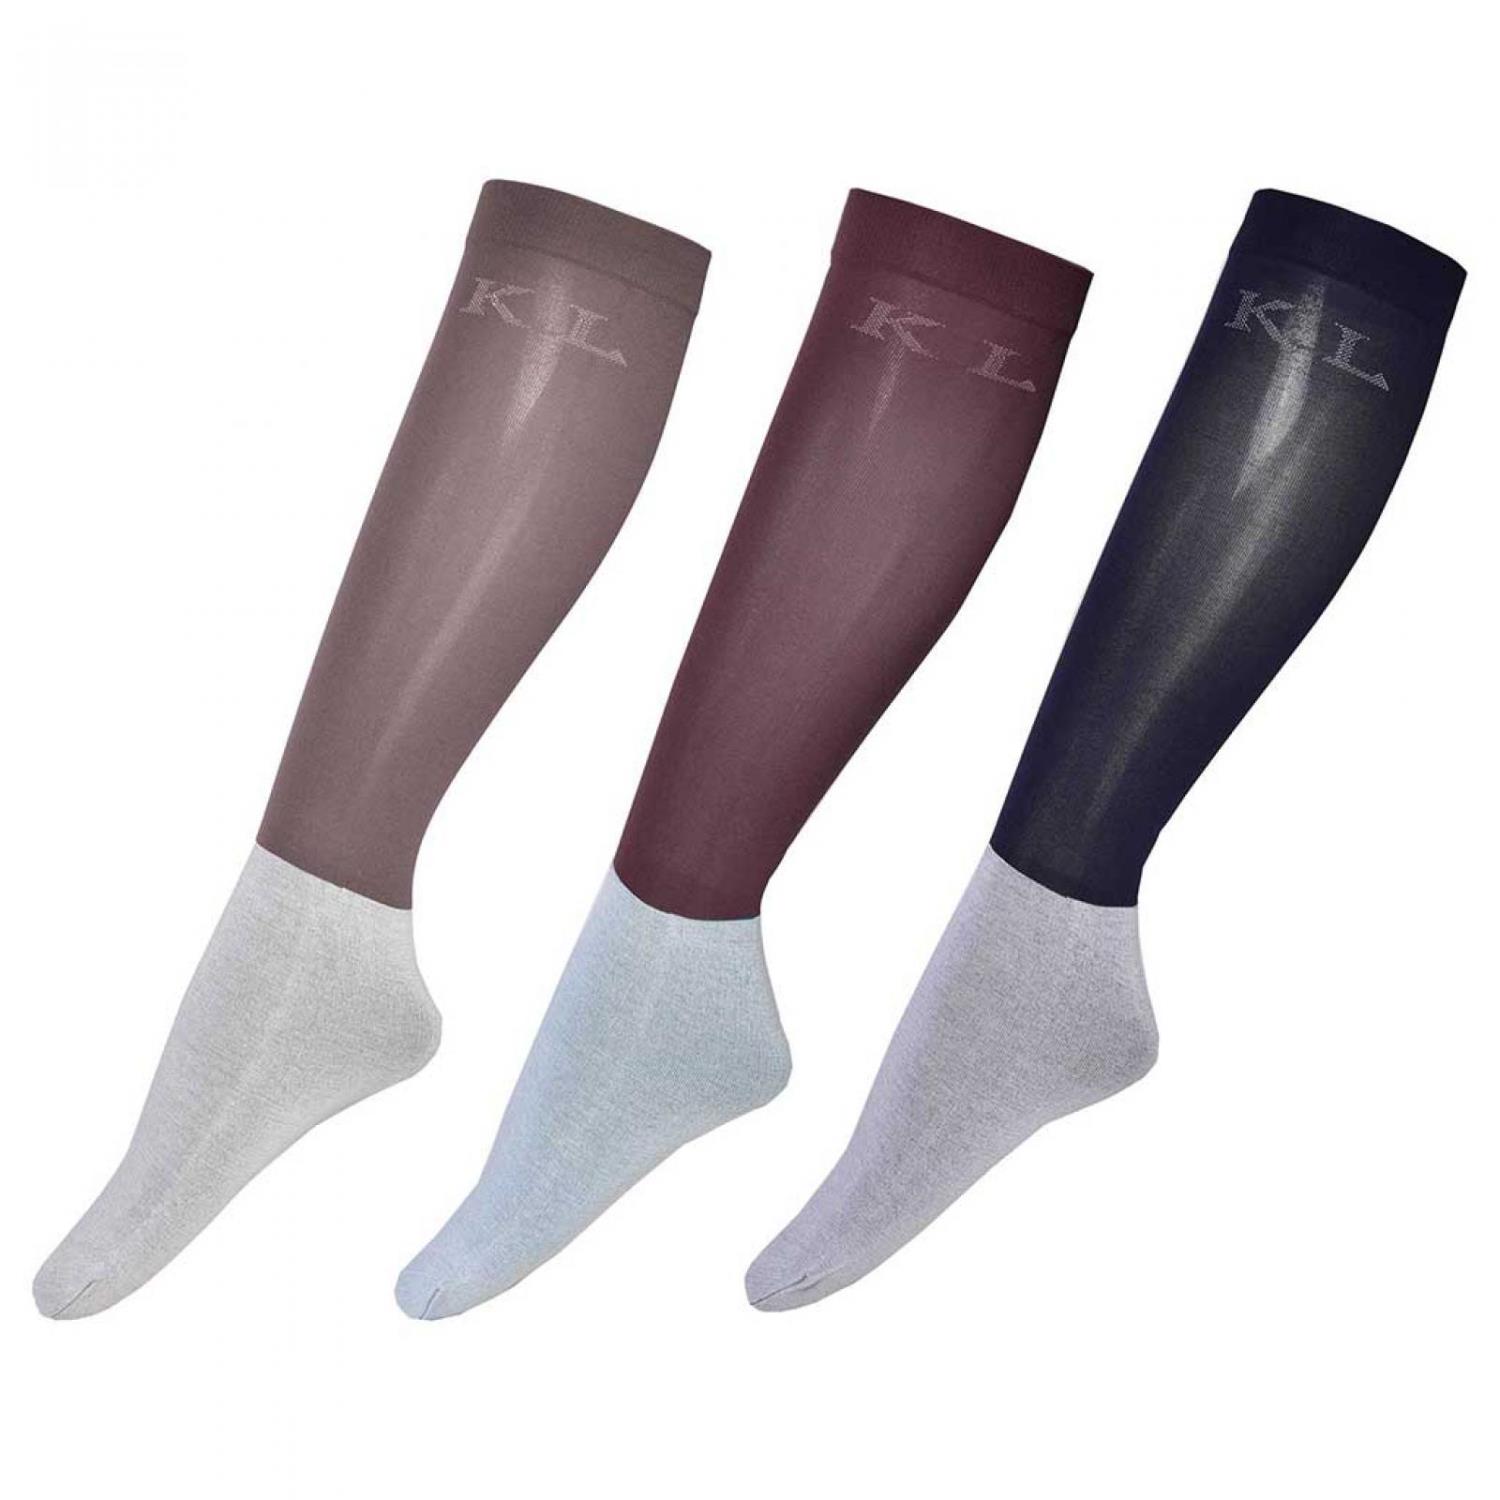 KL Letitzia Unisex Show Socks 3-Pack SS21